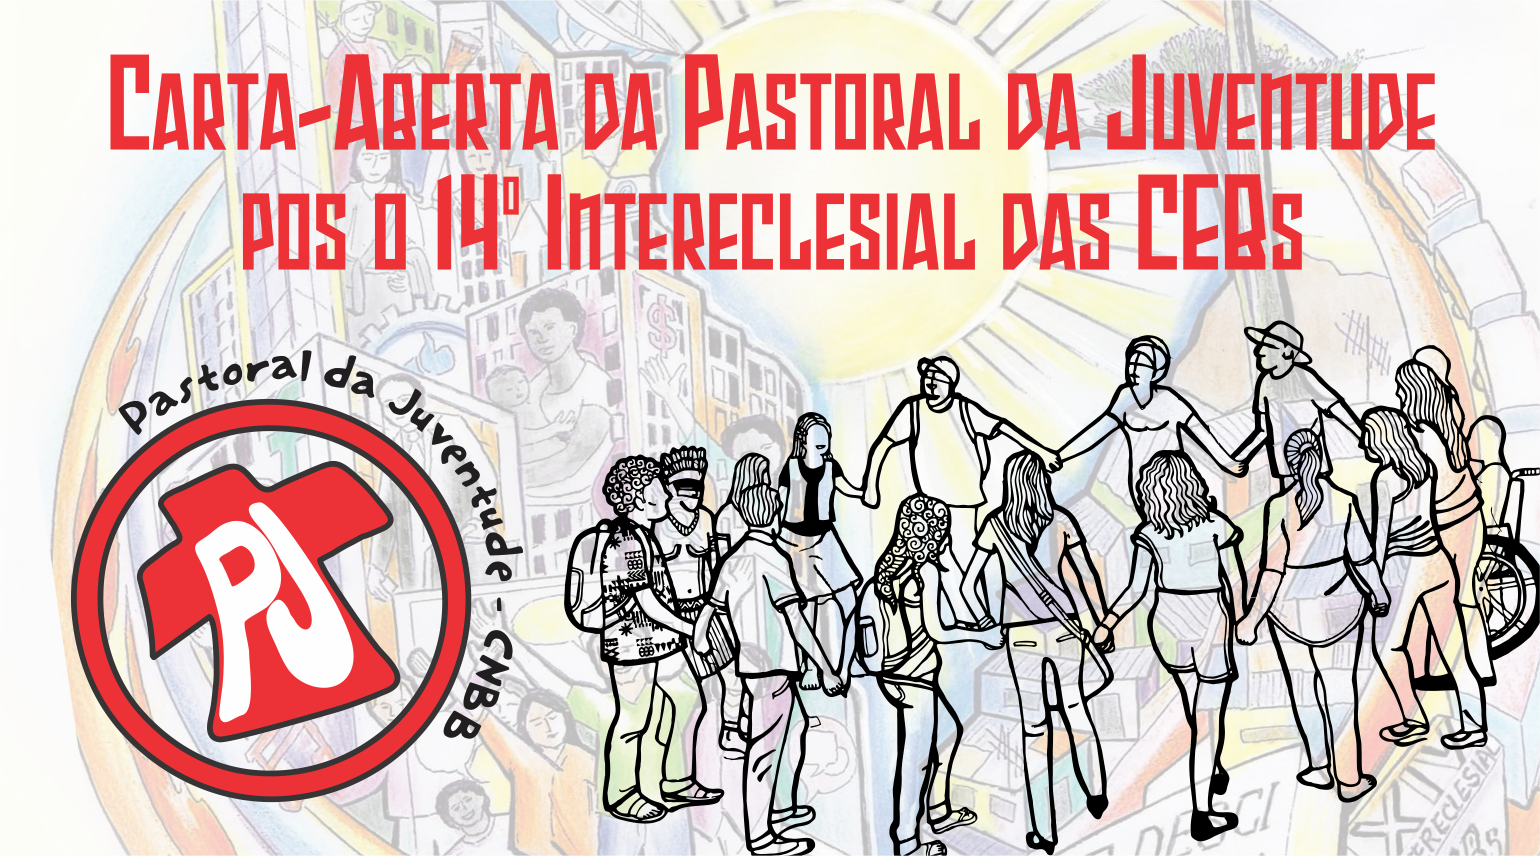  Carta-Aberta da Pastoral da Juventude pós o 14° Intereclesial das CEBs